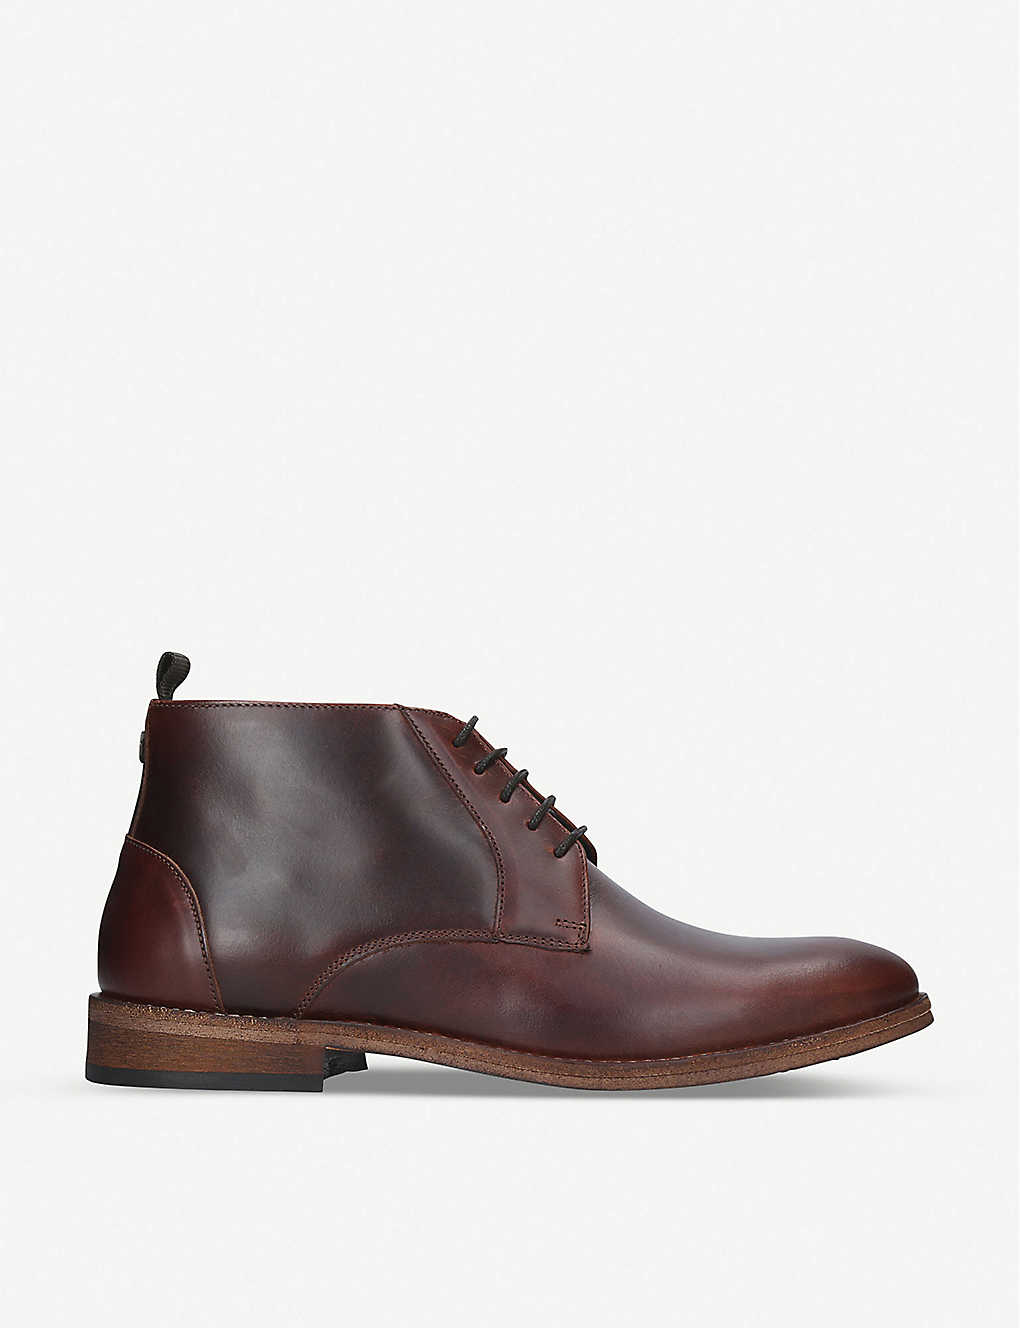 Benwell leather chukka boot(8402844)